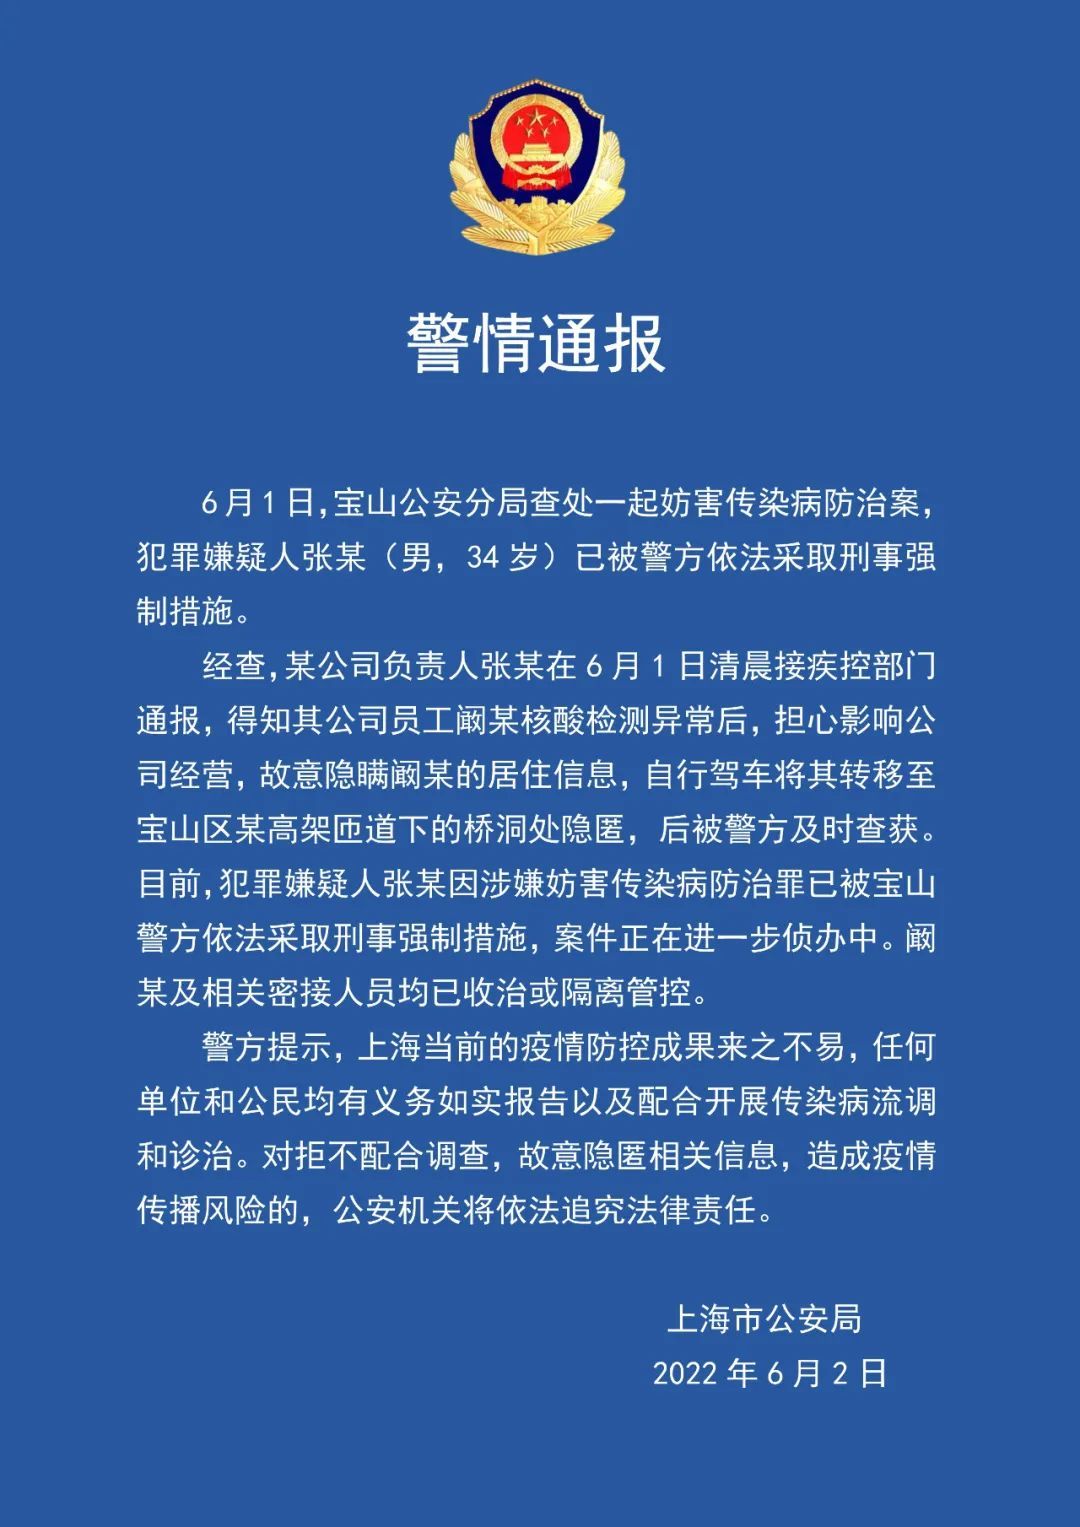 上海一老板将核酸异常员工藏在桥洞 已被采取刑事强制措施